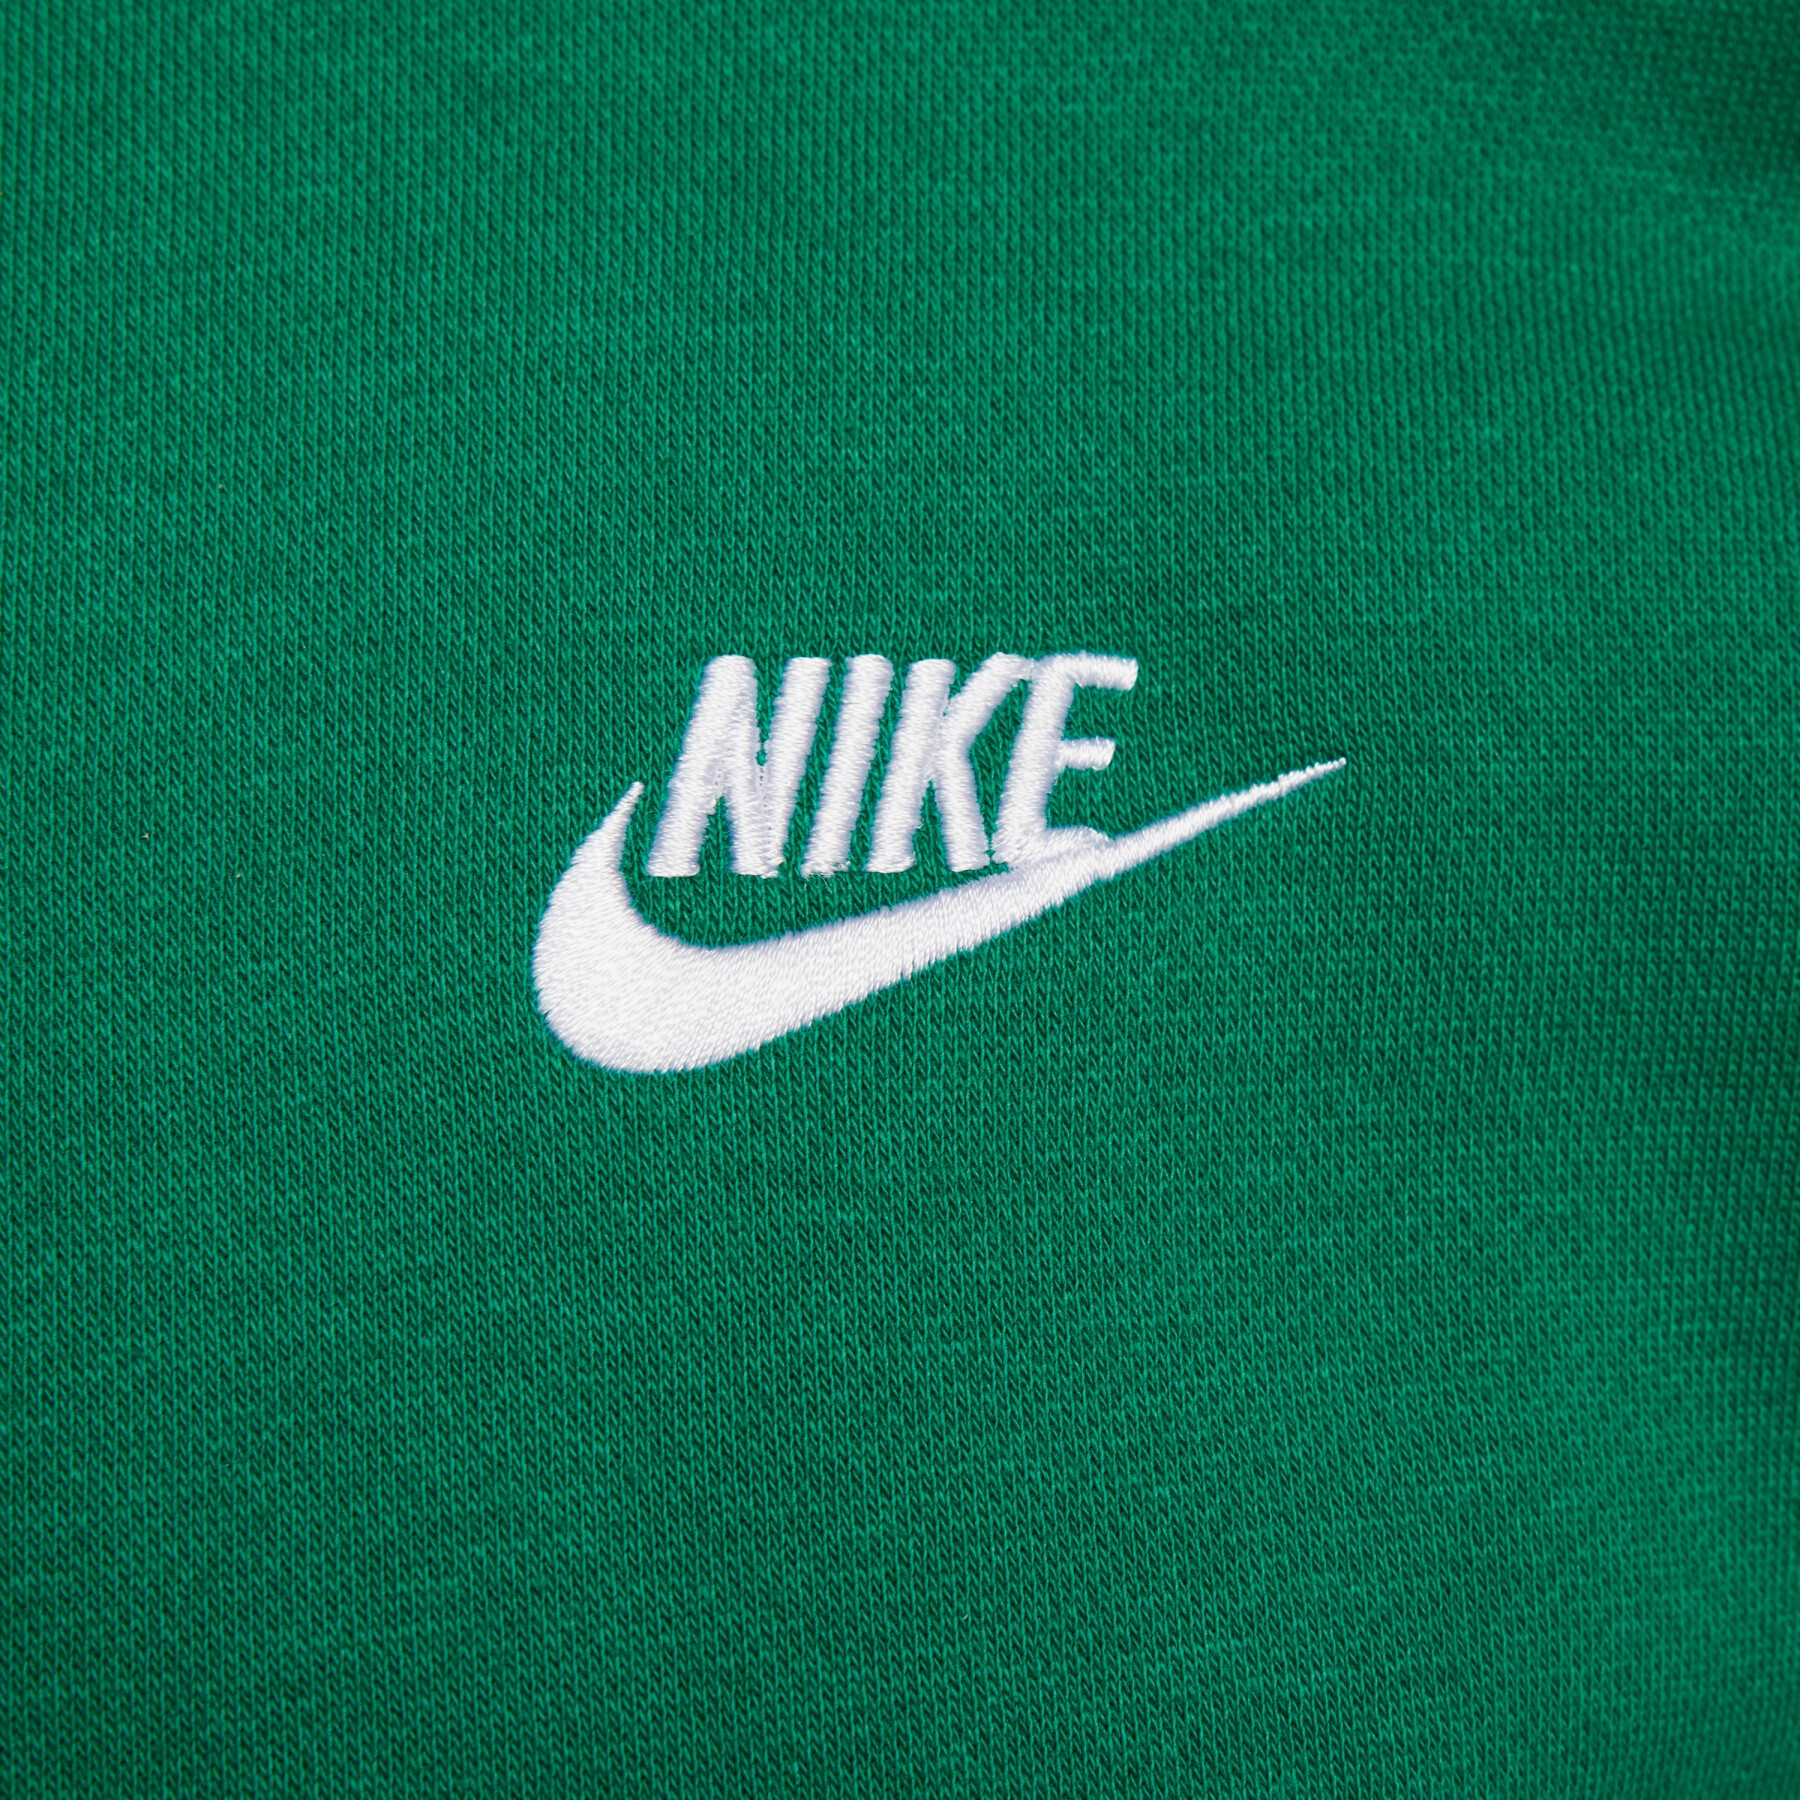 Sweatshirt mit Rundhalsausschnitt Nike Club Fleece